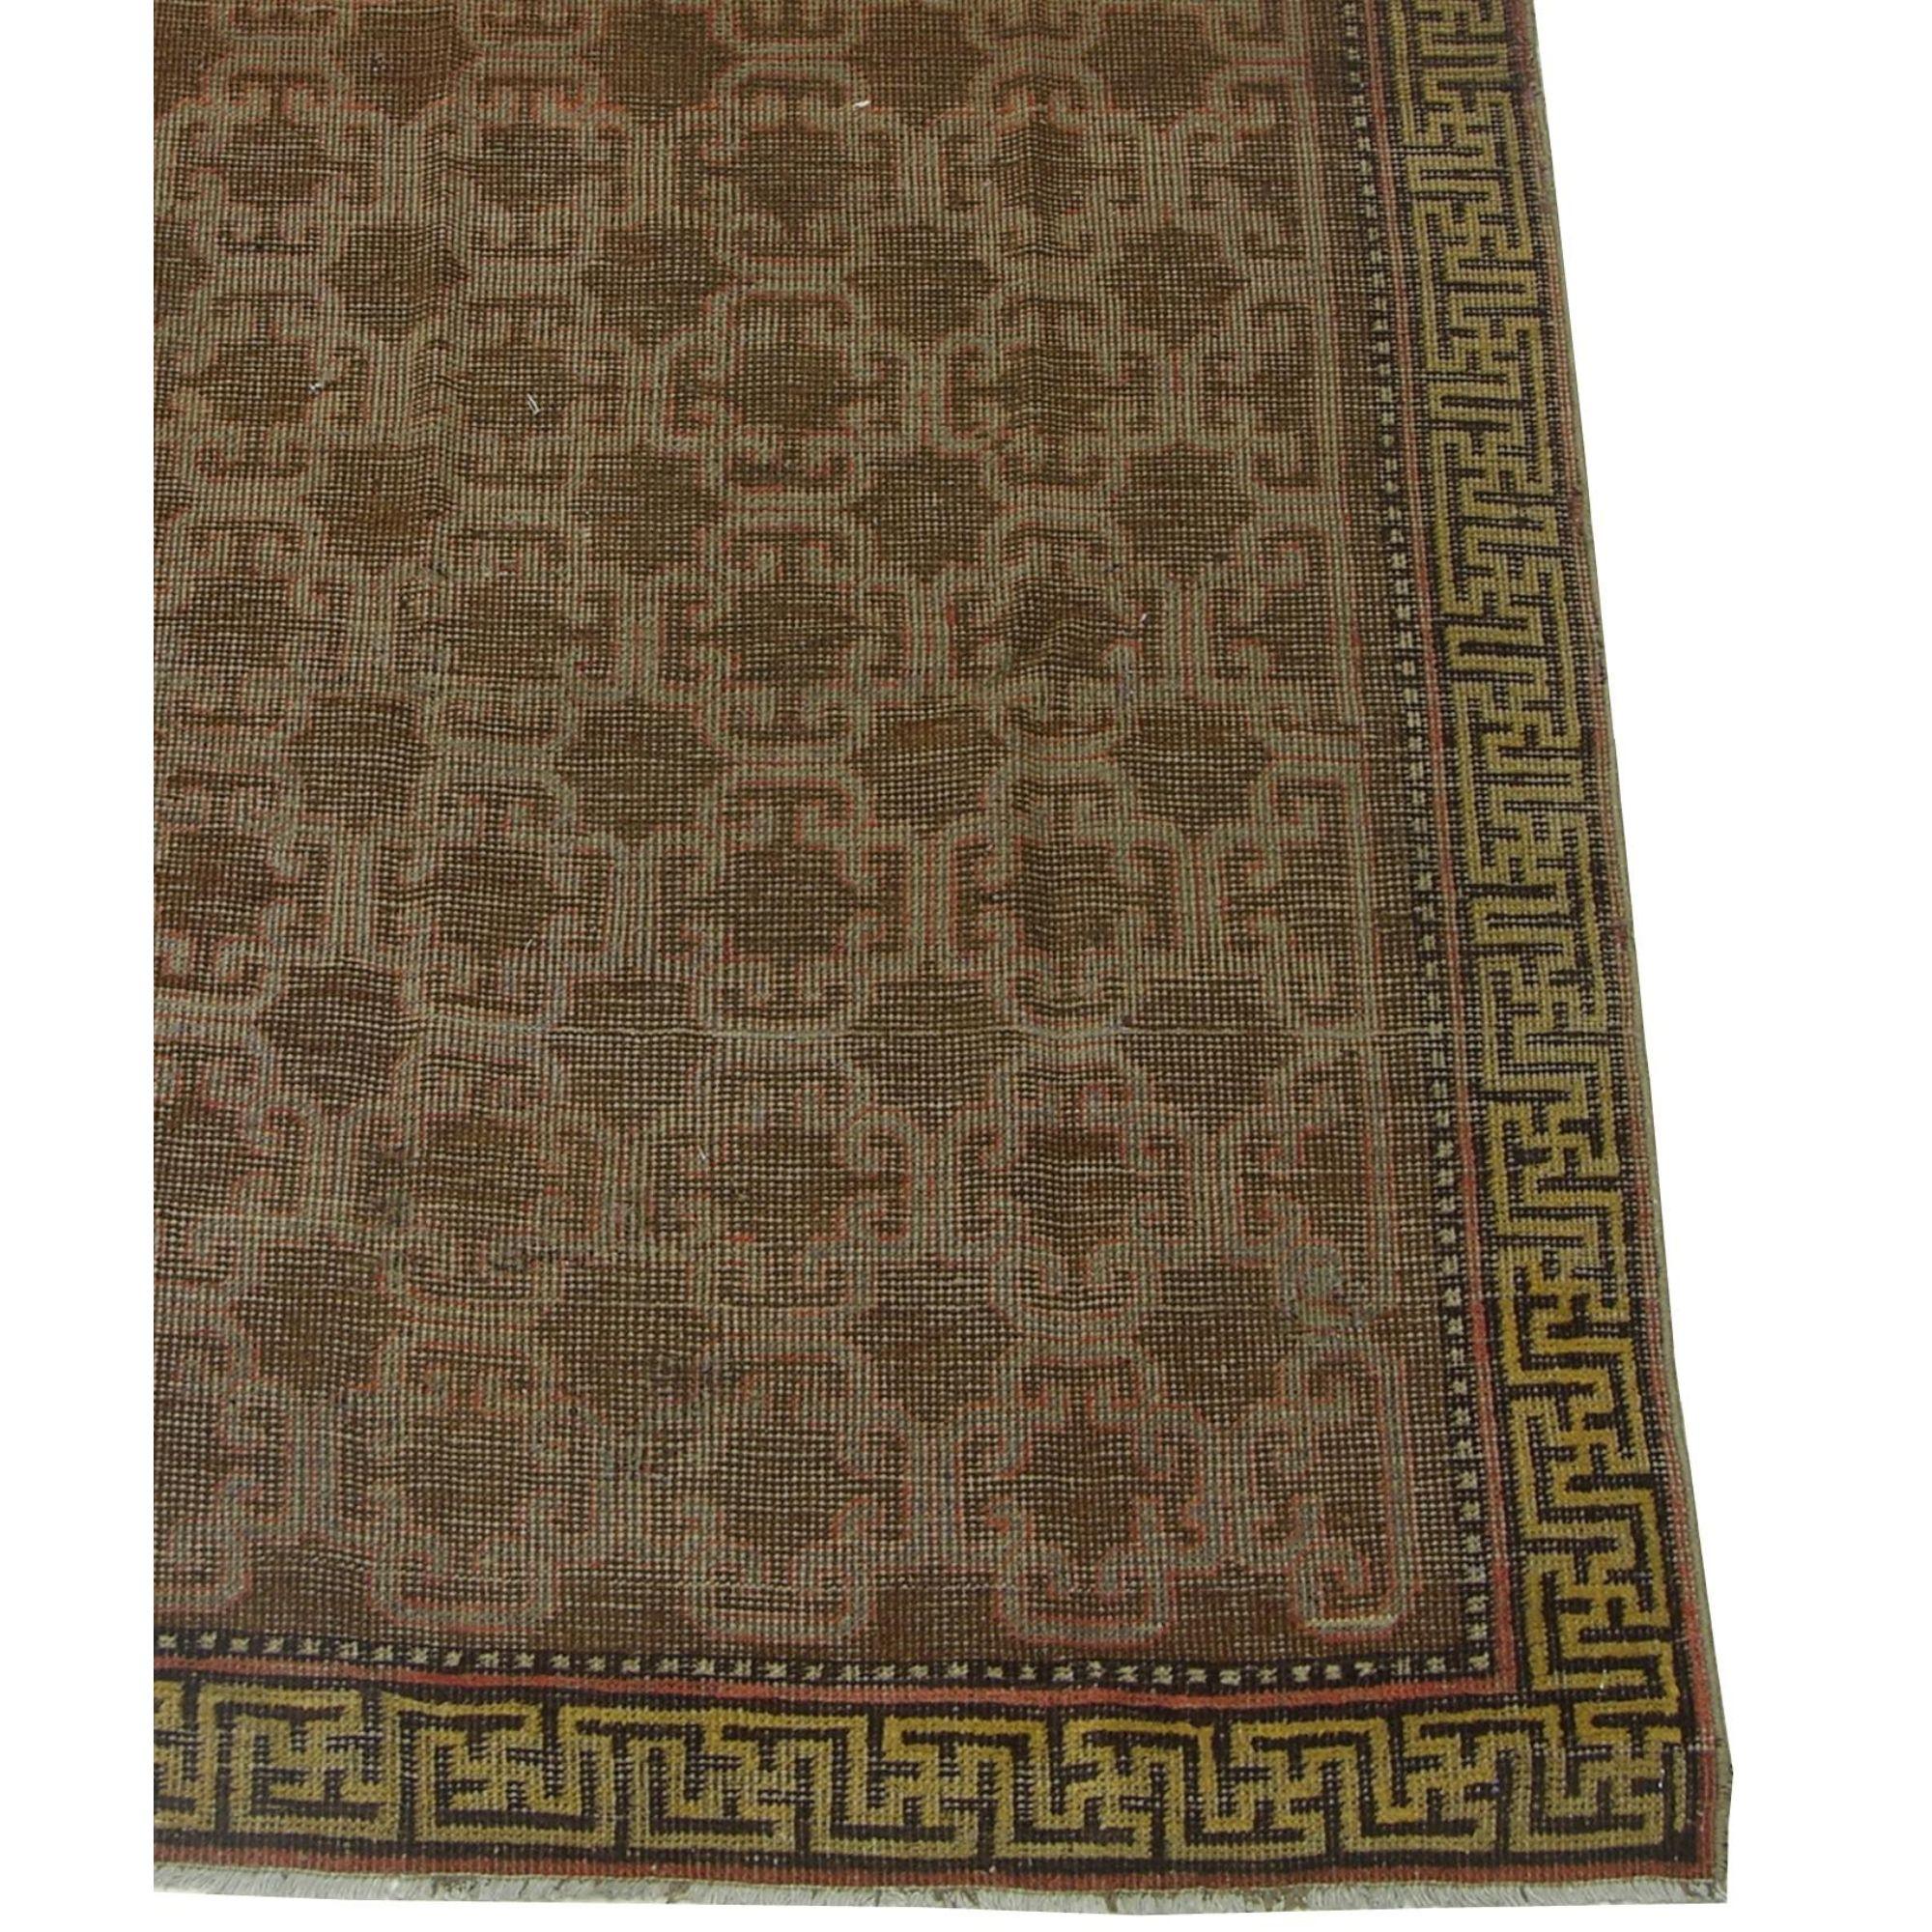 Ca.1900 Authentischer usbekischer Samarkand-Teppich 5'11'' x 3'2'', Stammes- und traditionell, Wolle mit Baumwollfond